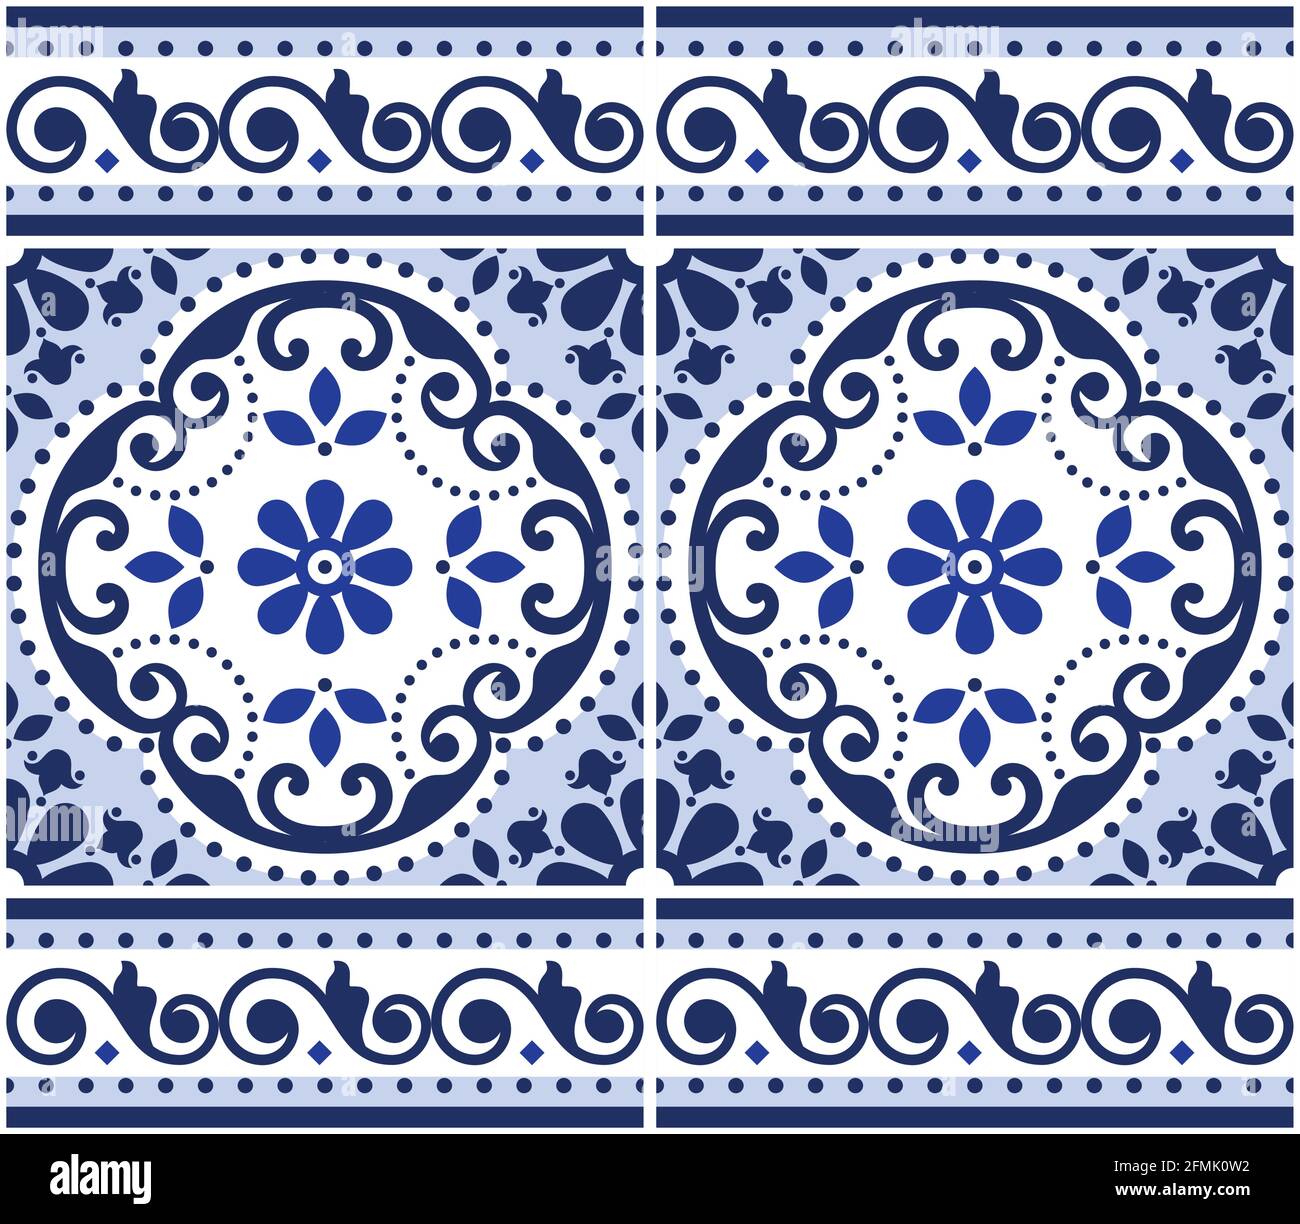 Lisbon Azulejo Fliesen nahtloses Vektor-Muster mit Rahmen oder Grenze, portugiesisches Indigo Retro-Design mit Blumen, Wirbeln und geometrischen Formen Stock Vektor